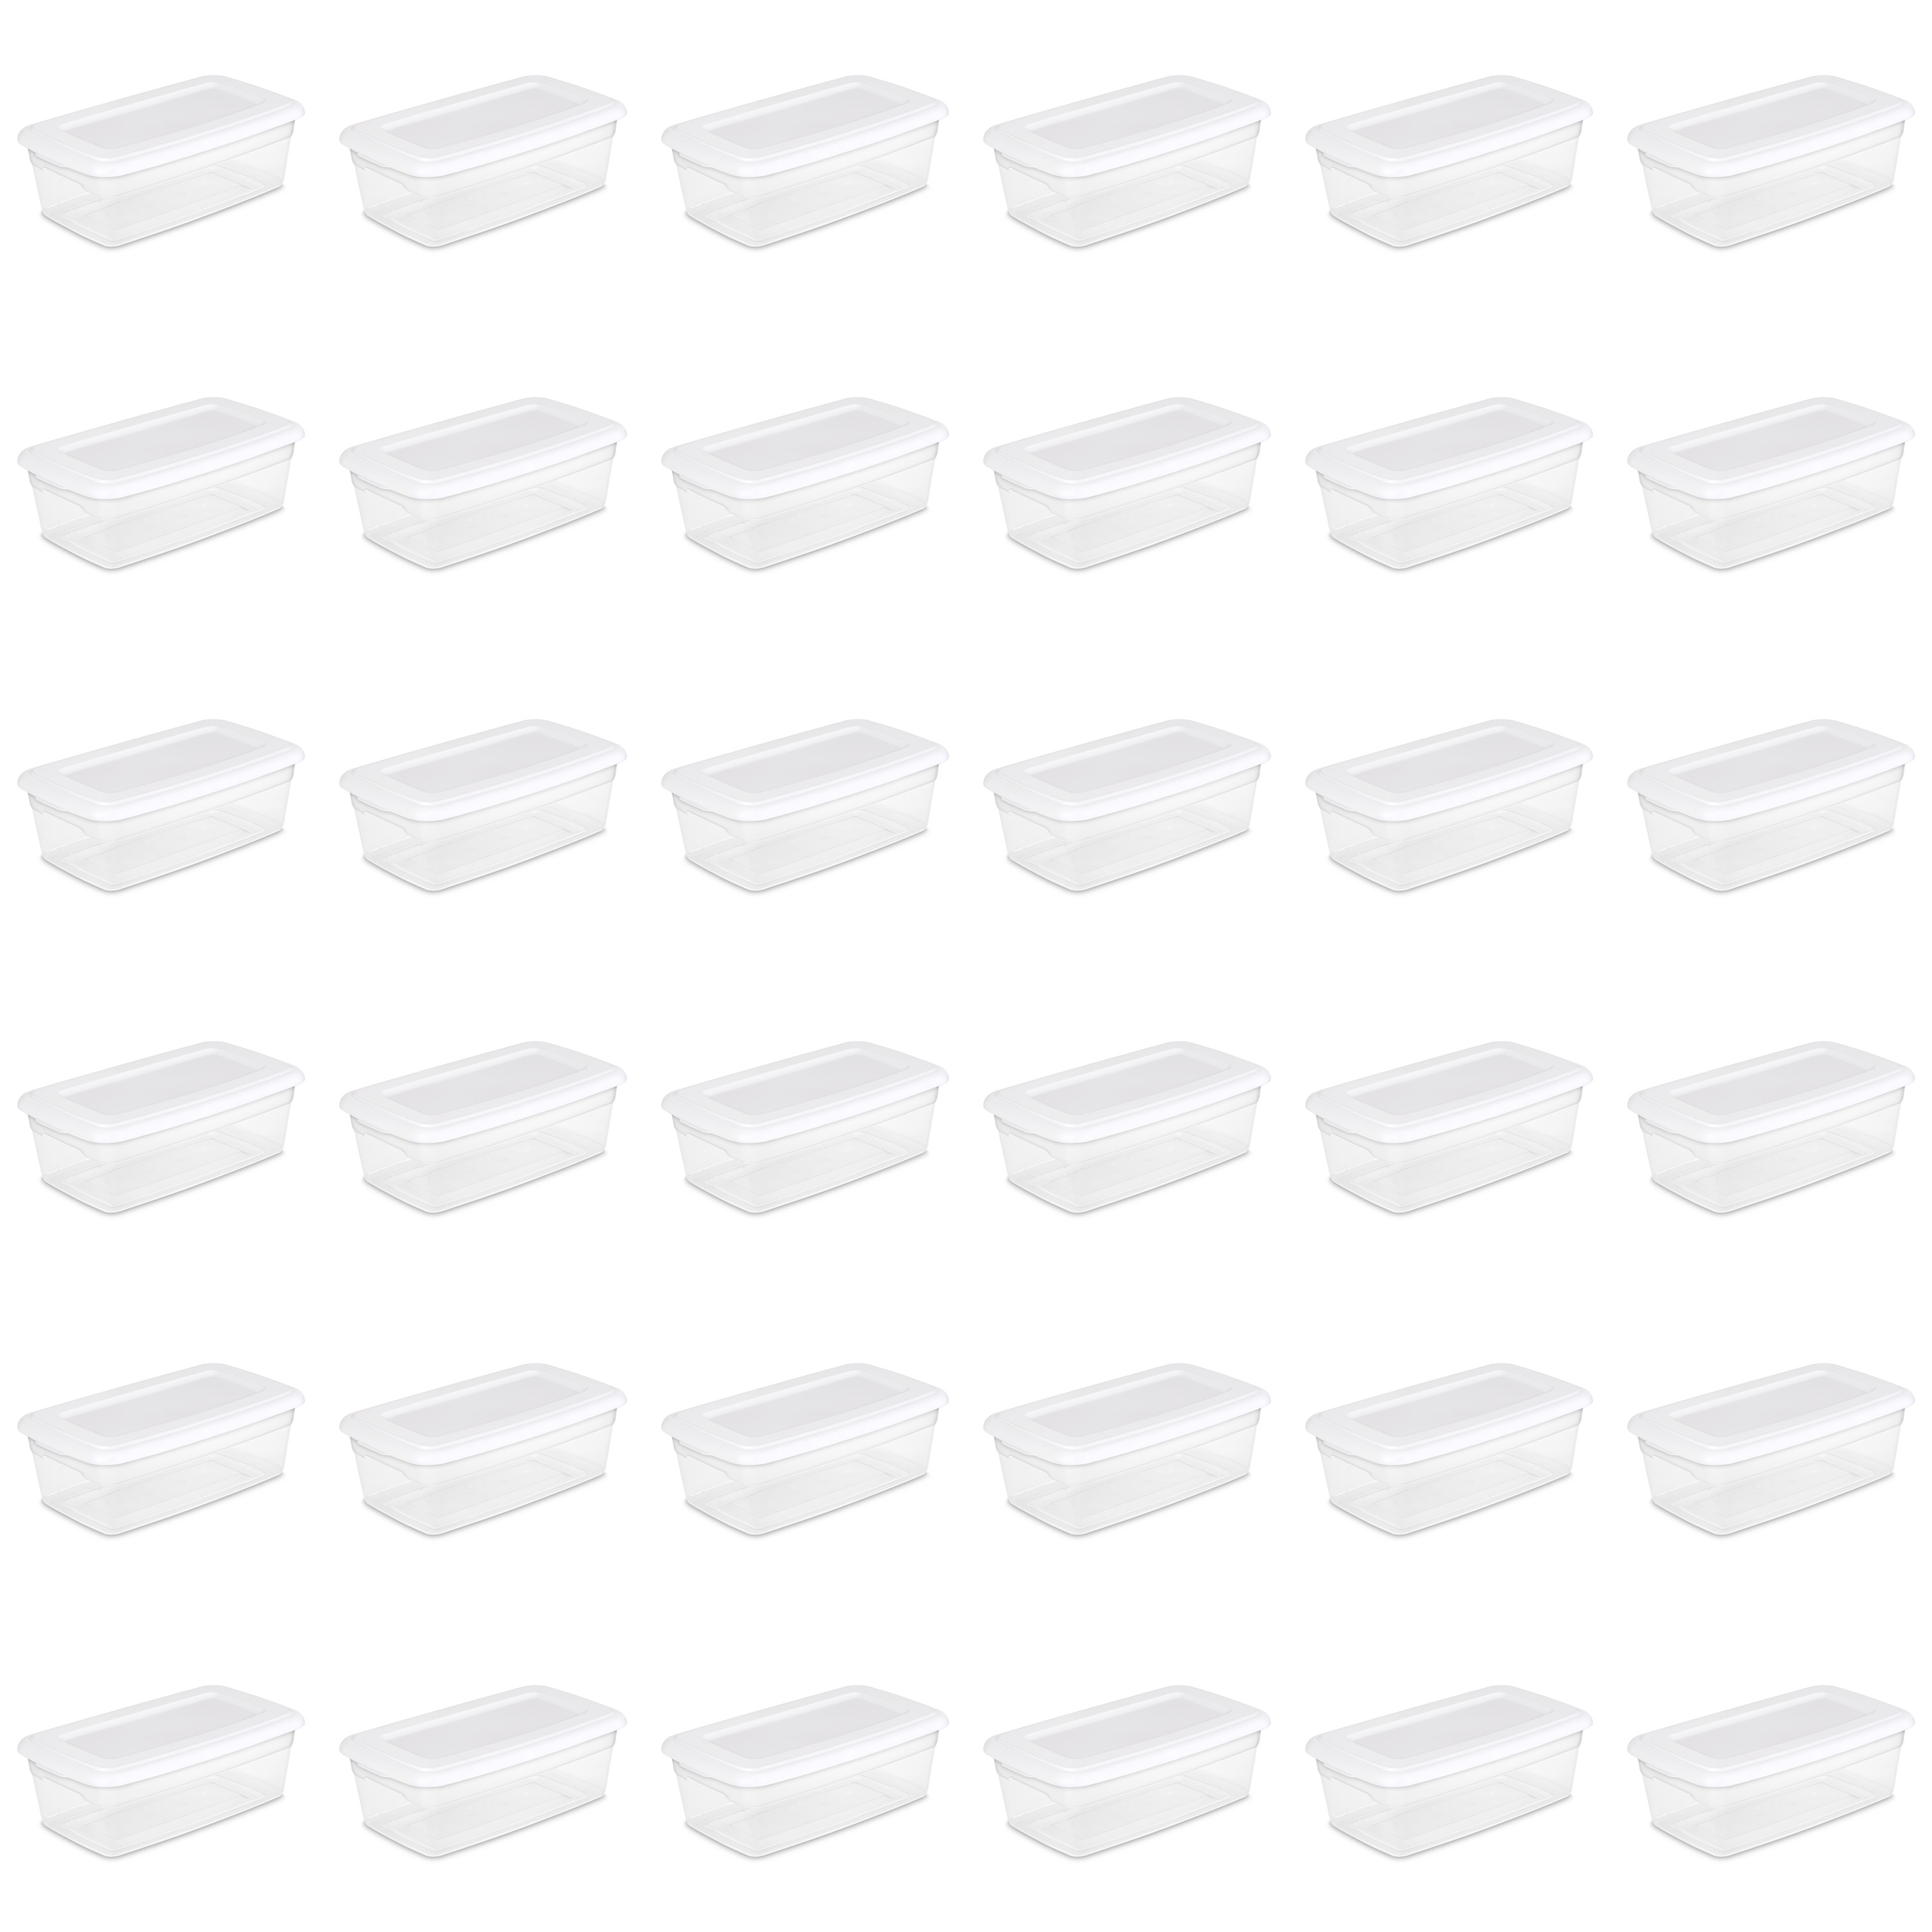 Sterilite 6 Qt. Storage Box Plastic, White, Set of 36 - image 1 of 8